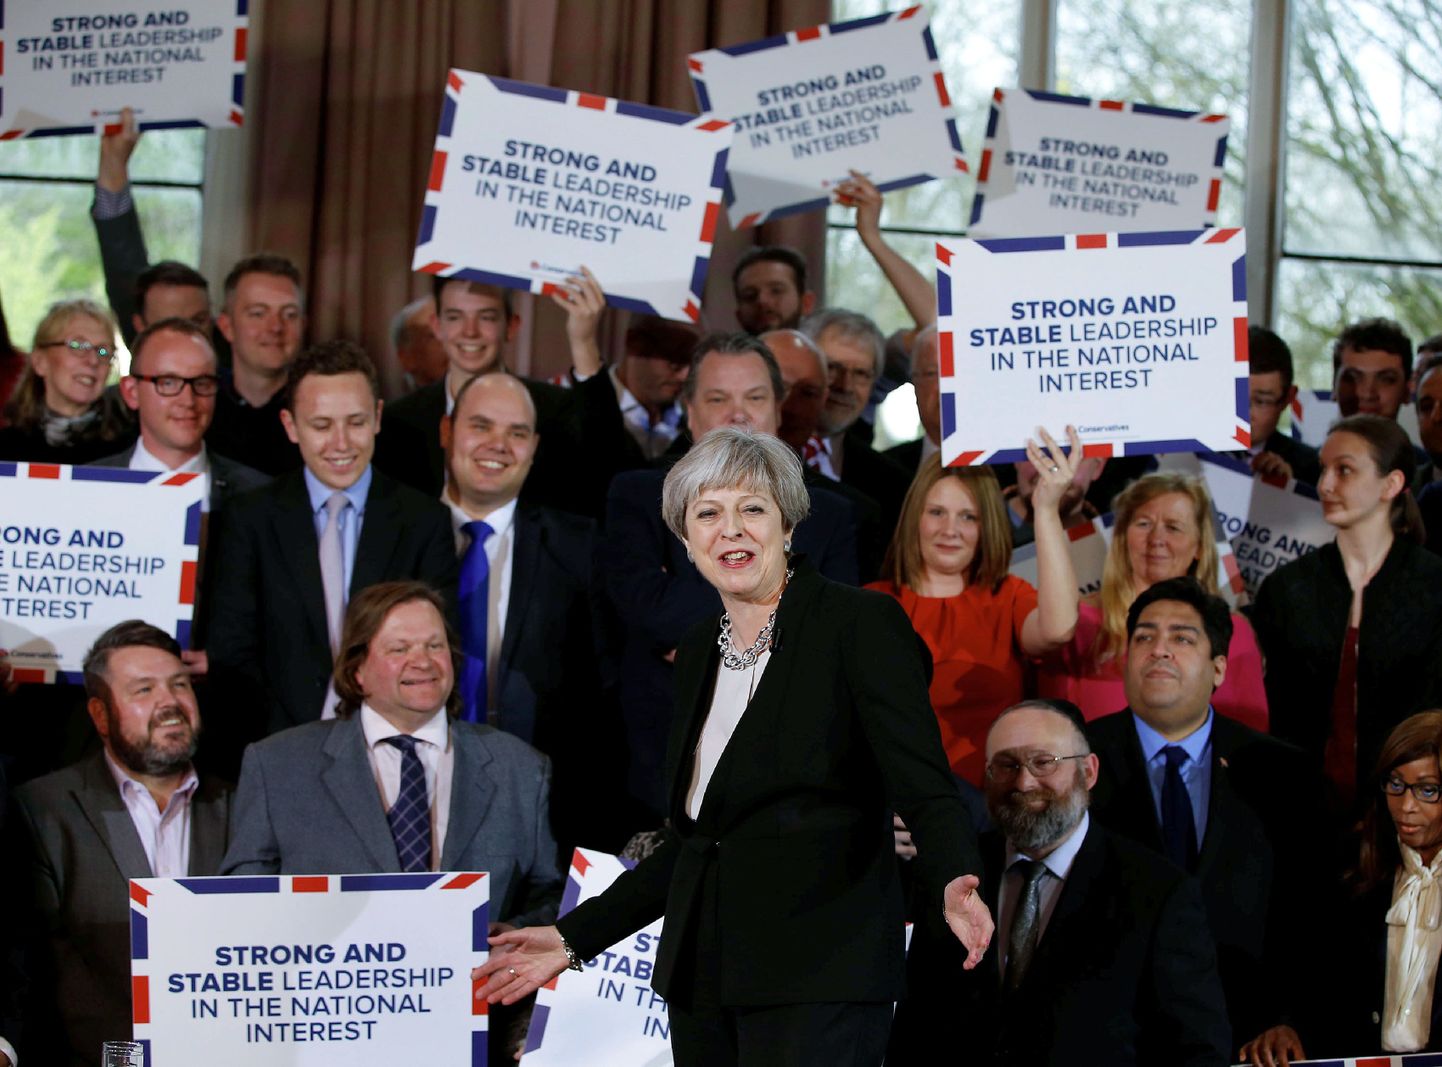 Briti peaminister Theresa May (keskel) konservatiividele kõnet pidamas.